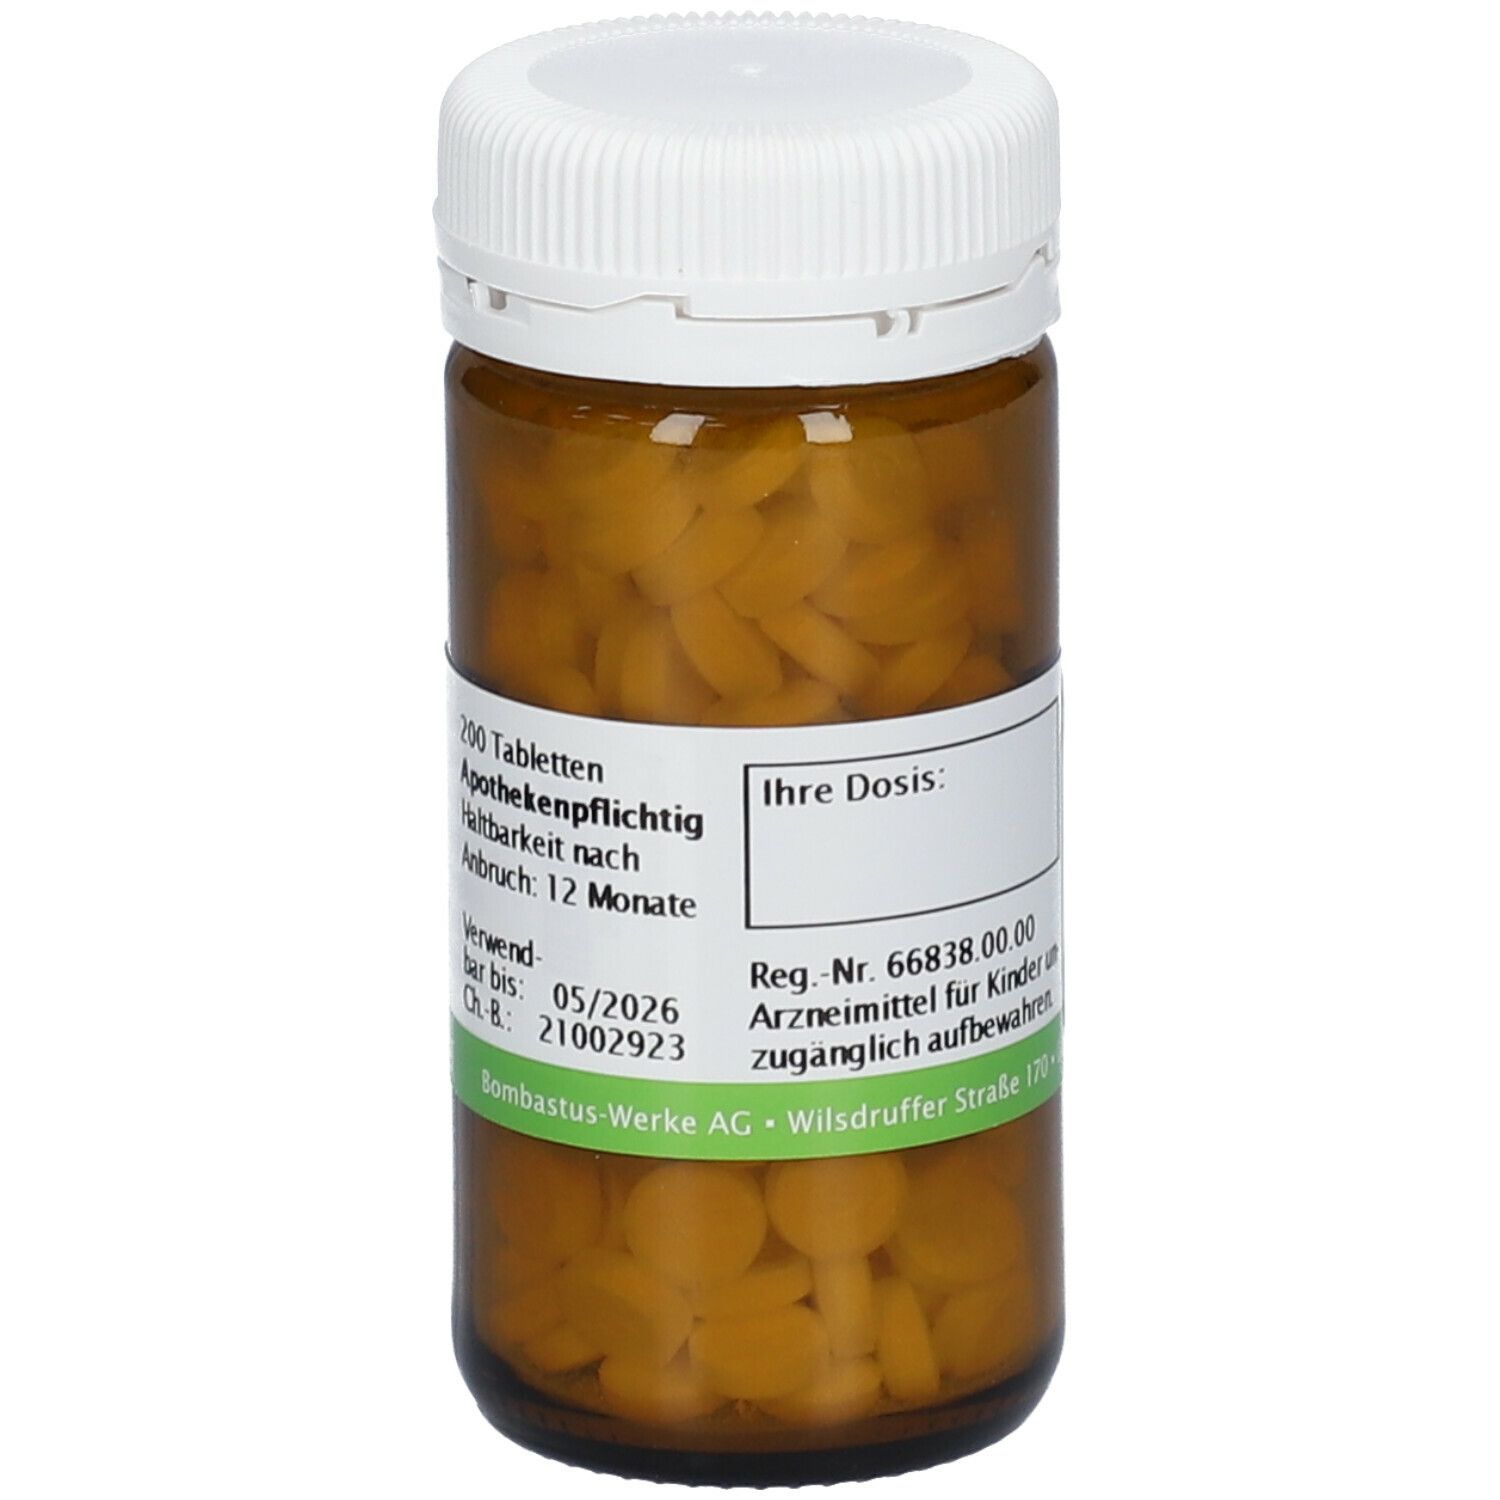 Bombastus Biochemie 7 Magnesium phosphoricum D 6 Tabletten